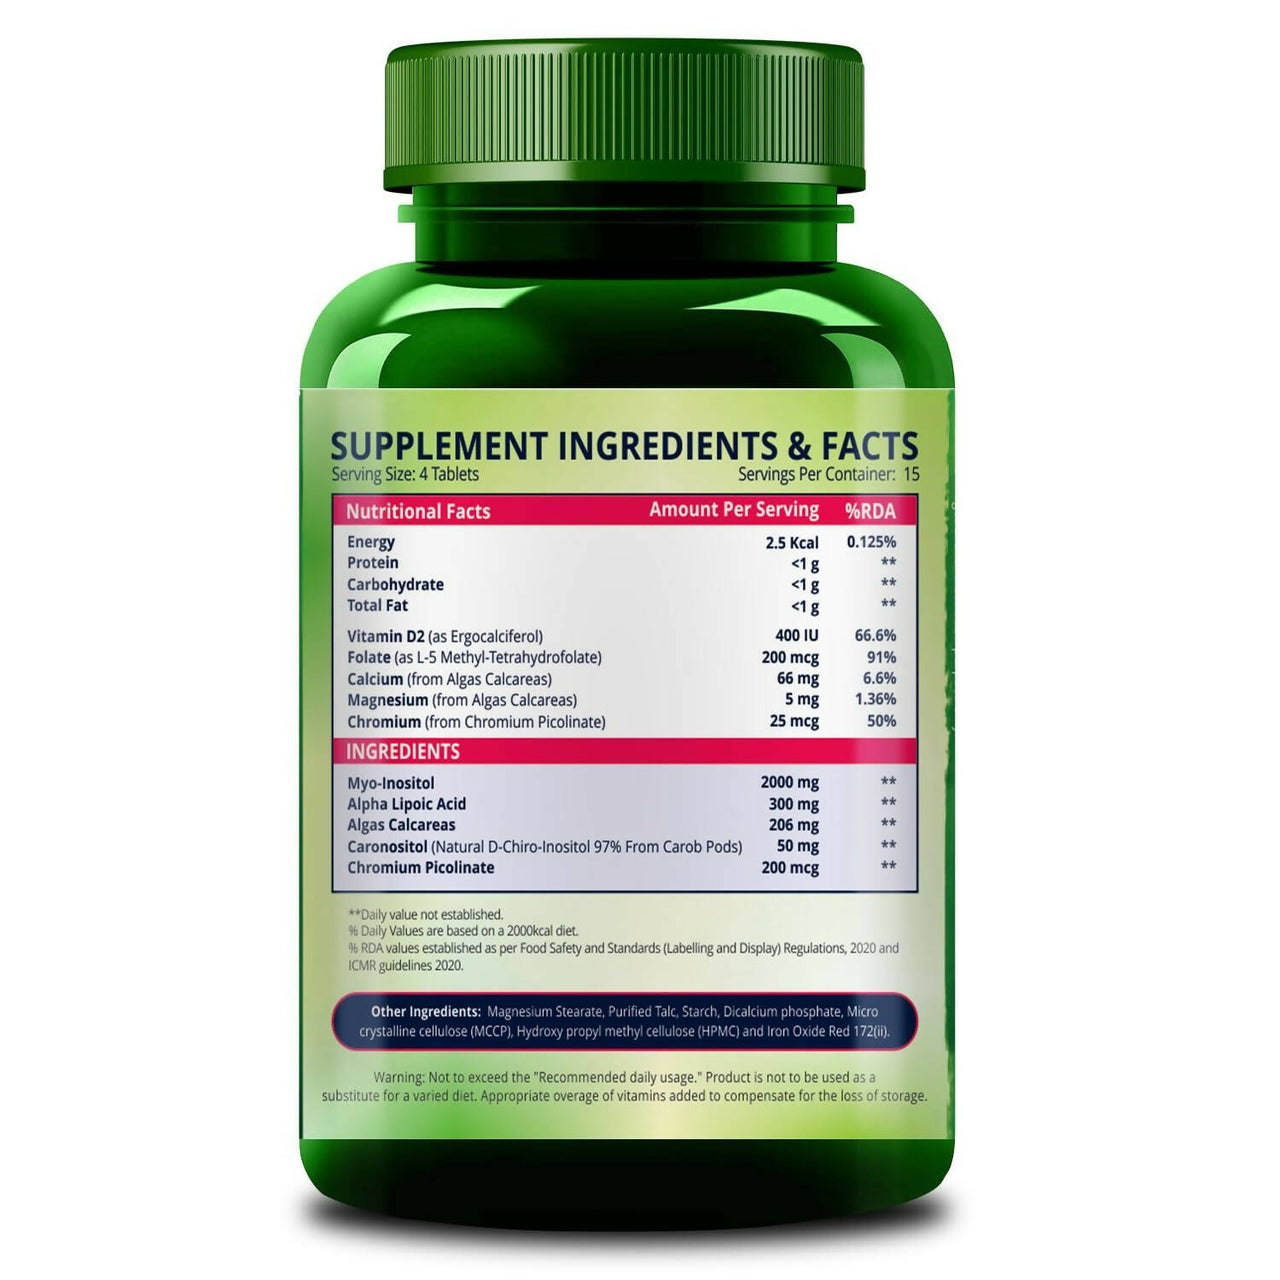 Himalayan Organics Pcos Supplement Tablets - Distacart